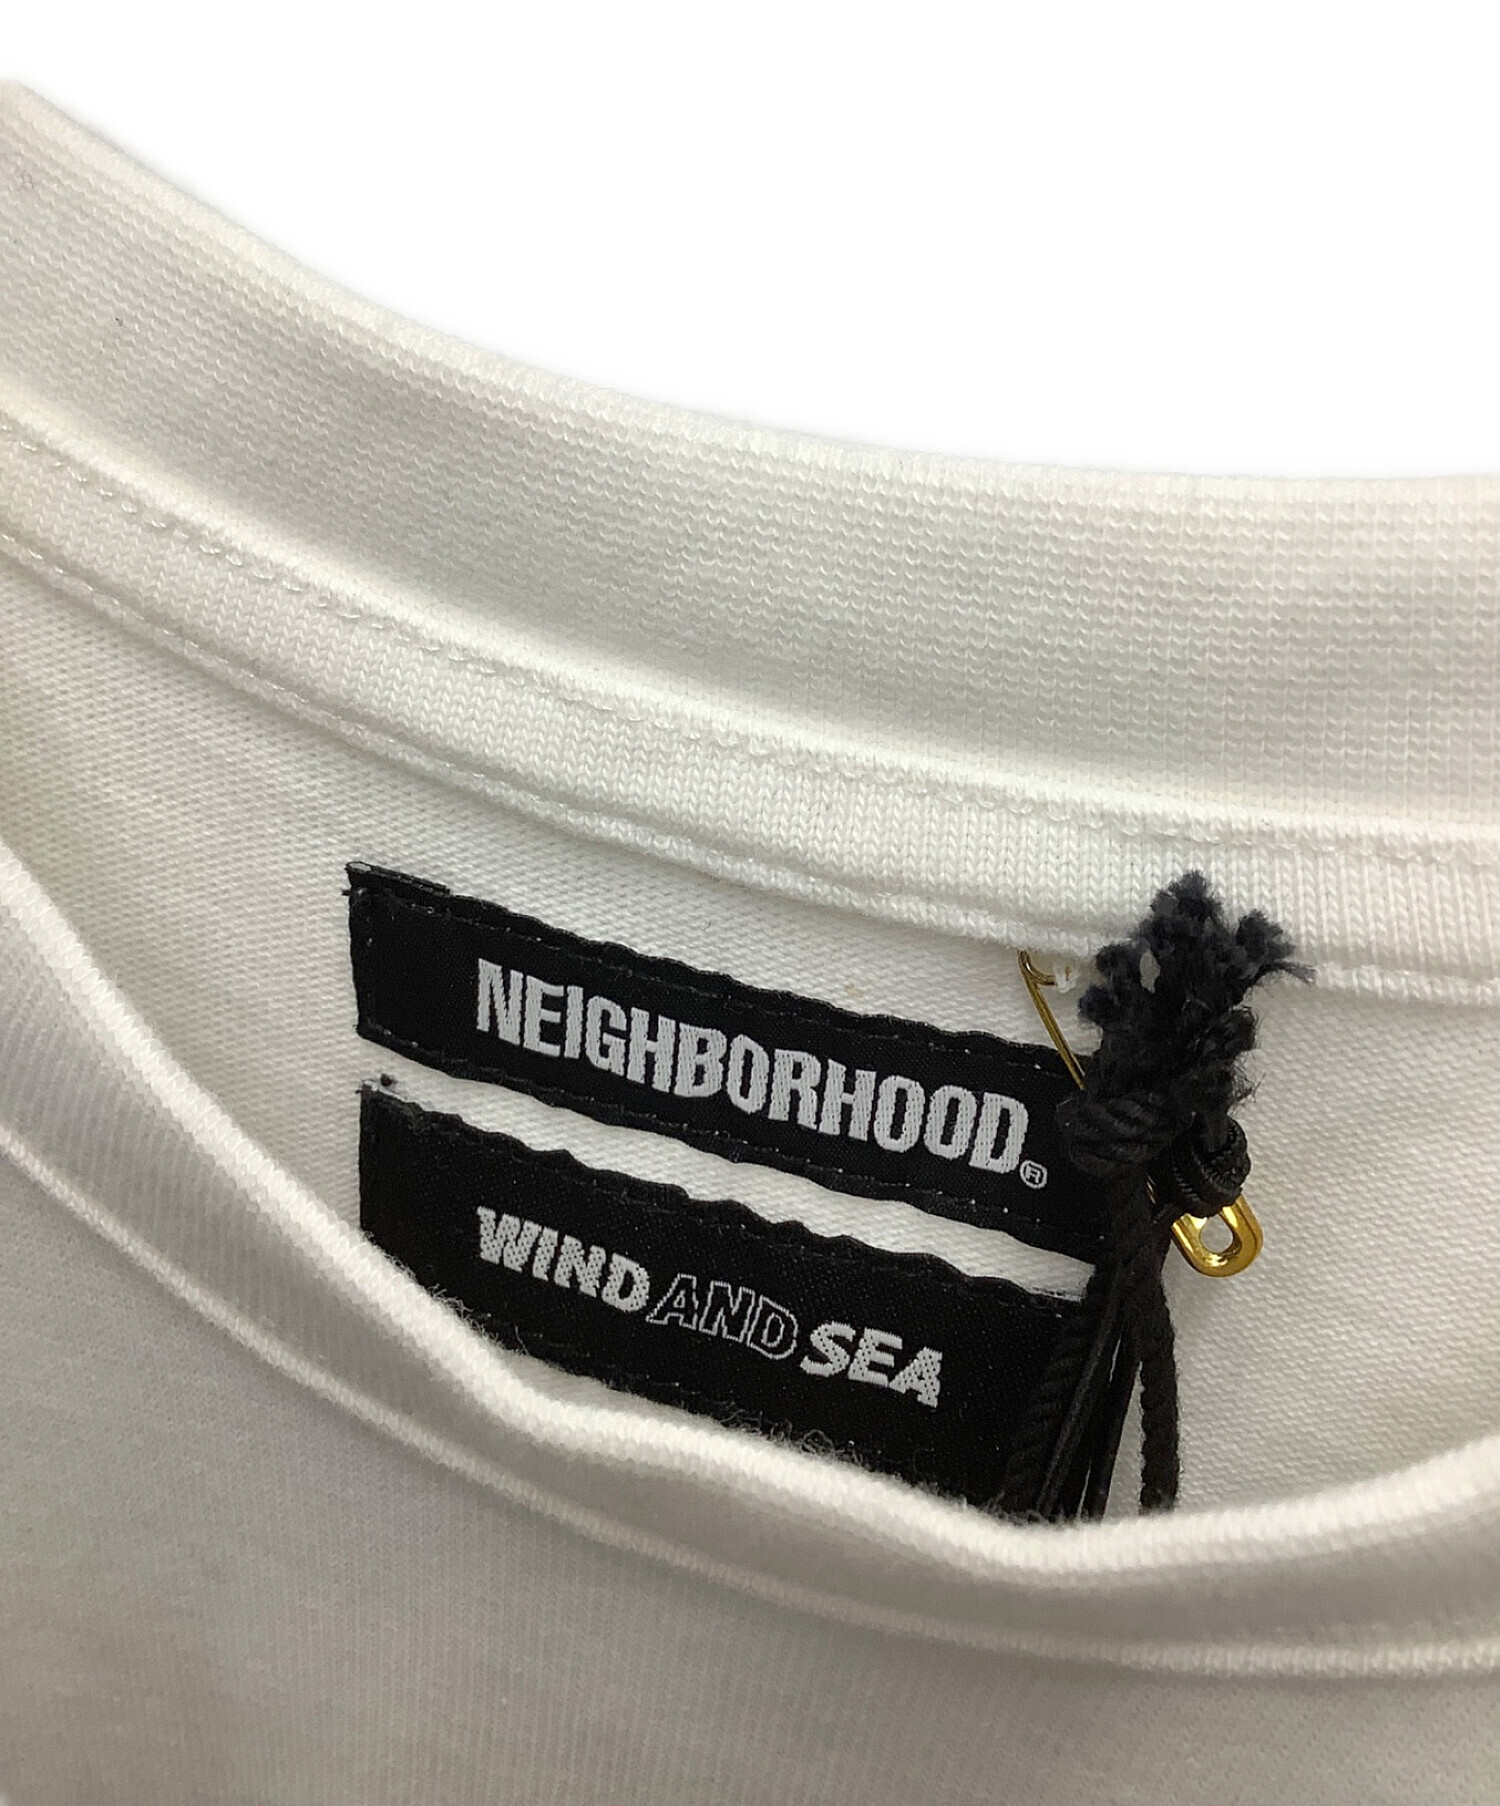 Mサイズ NEIGHBORHOOD WIND AND SEA Tシャツ ホワイト - メンズファッション